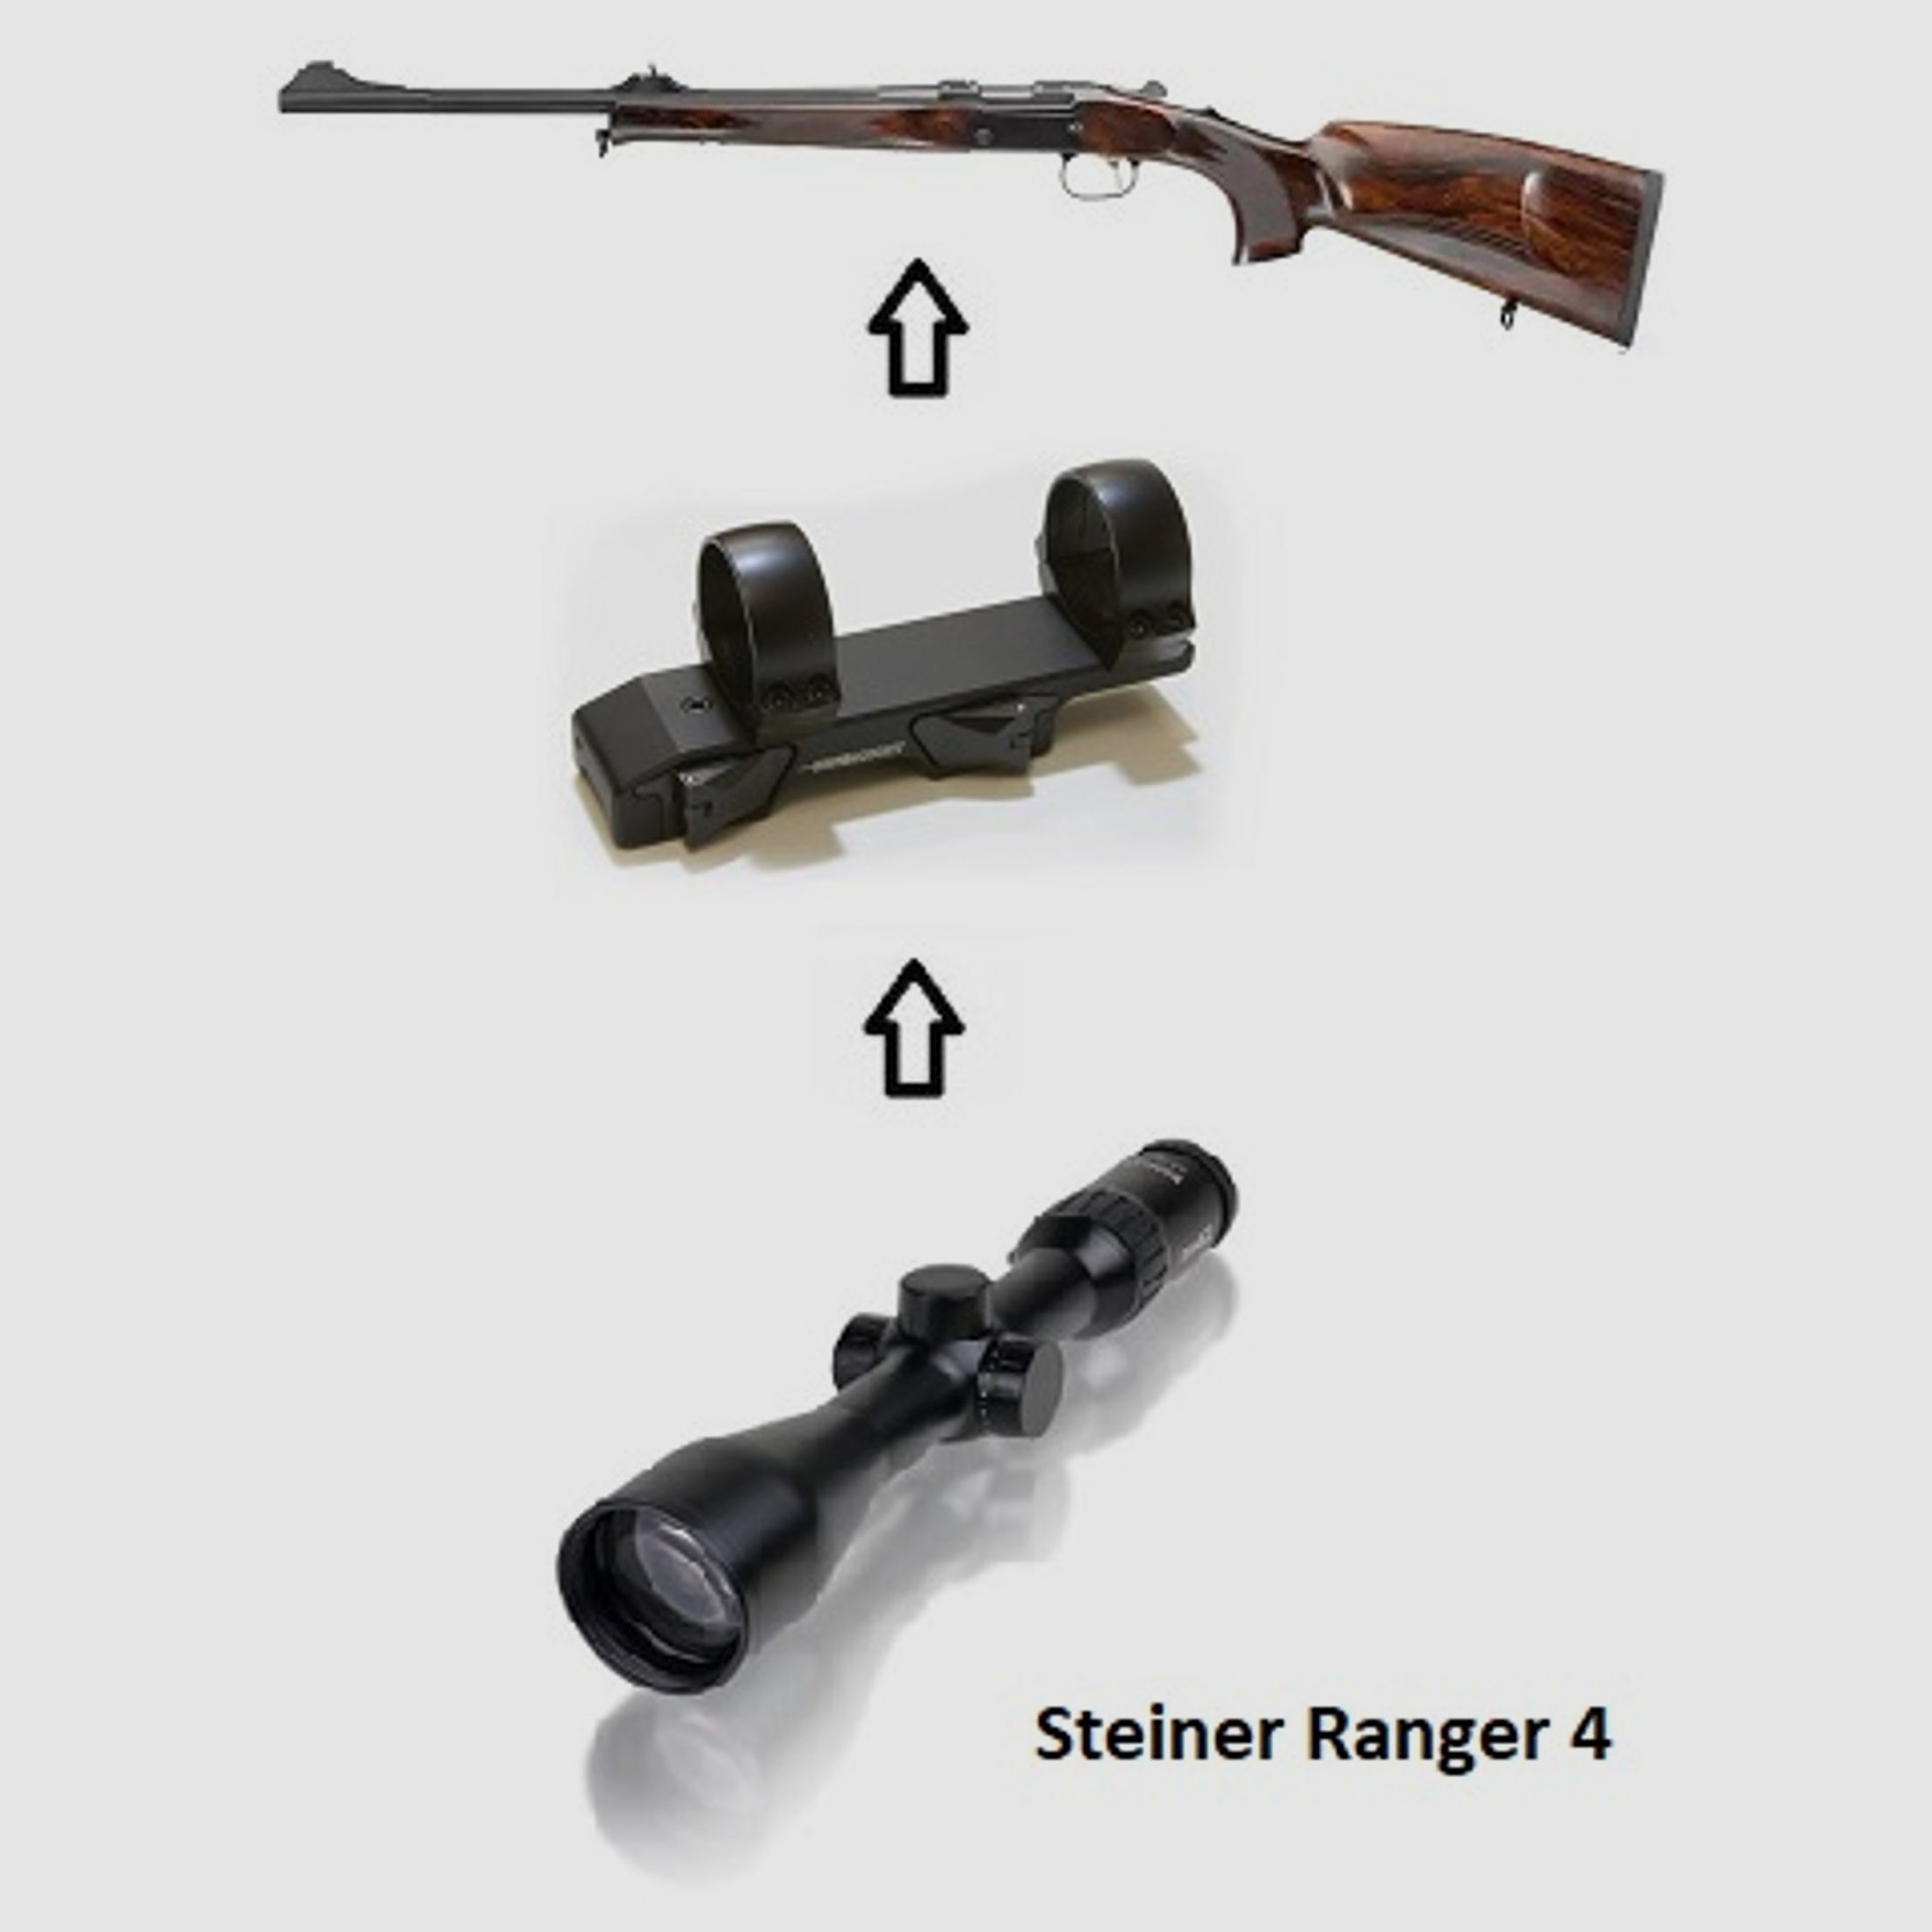 Merkel K5 Extreme + Steiner Ranger 4 + Montage / Waffenpaket